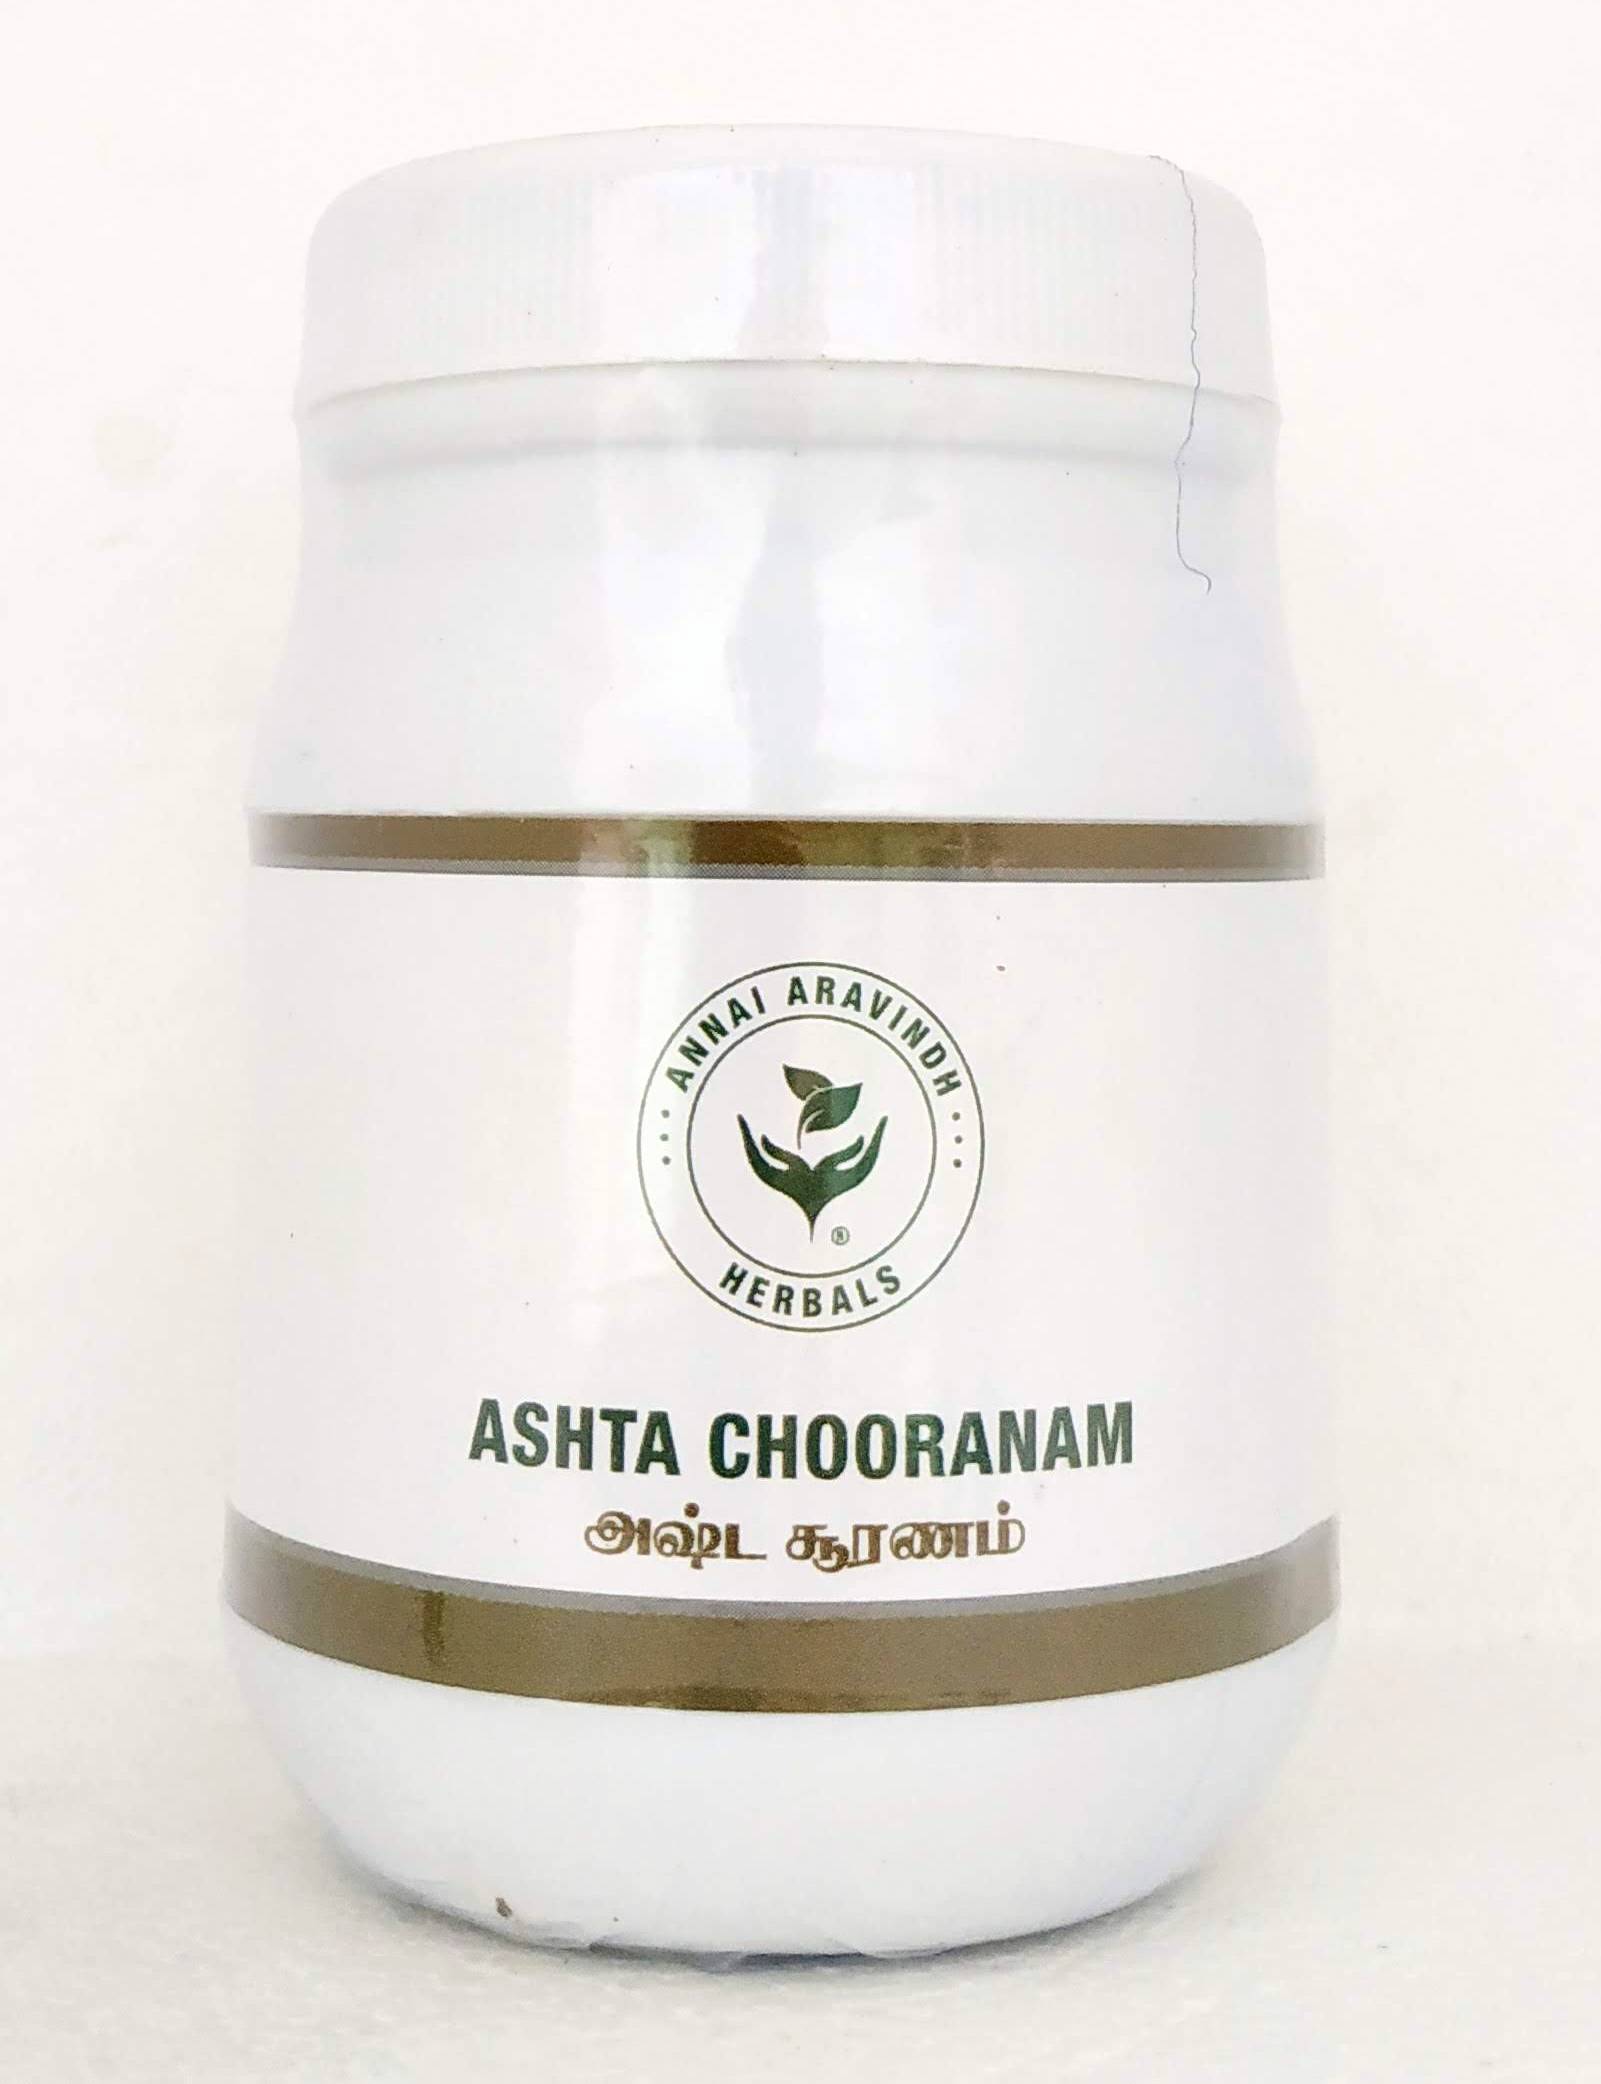 Shop Ashta chooranam 100gm at price 135.00 from Annai Aravindh Online - Ayush Care